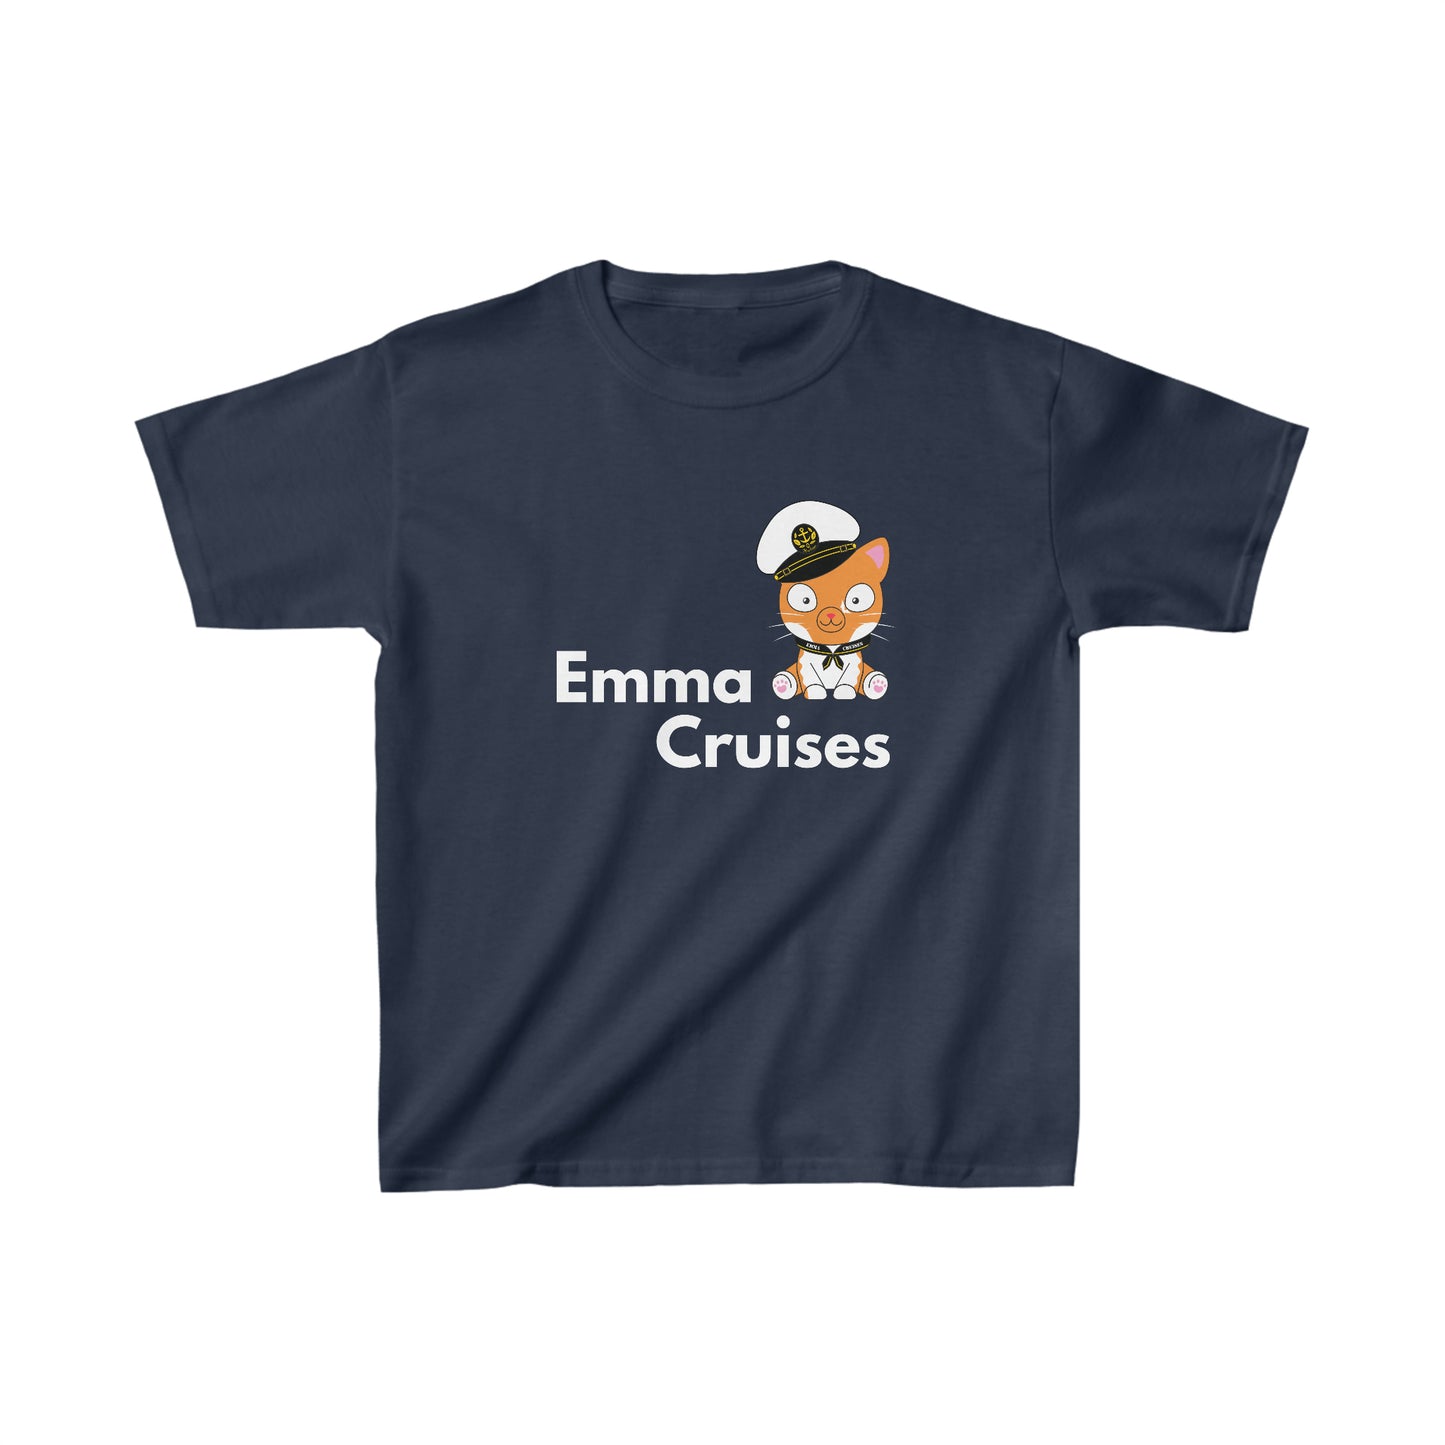 Emma Cruceros - Camiseta UNISEX para niños 